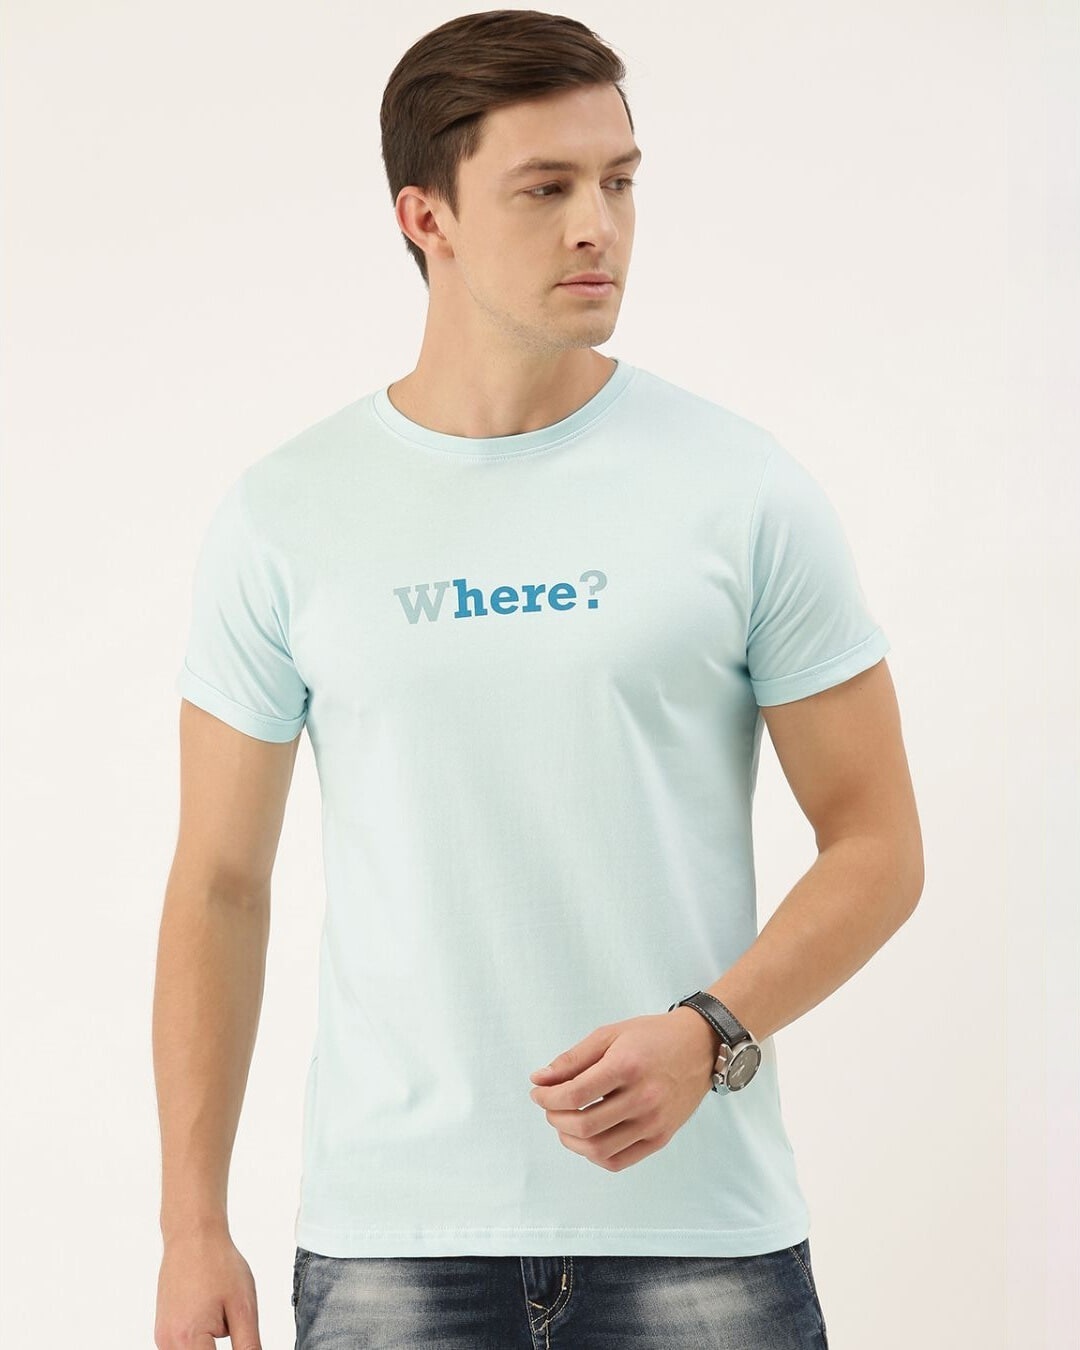 Shop Men's Blue Typography T-shirt